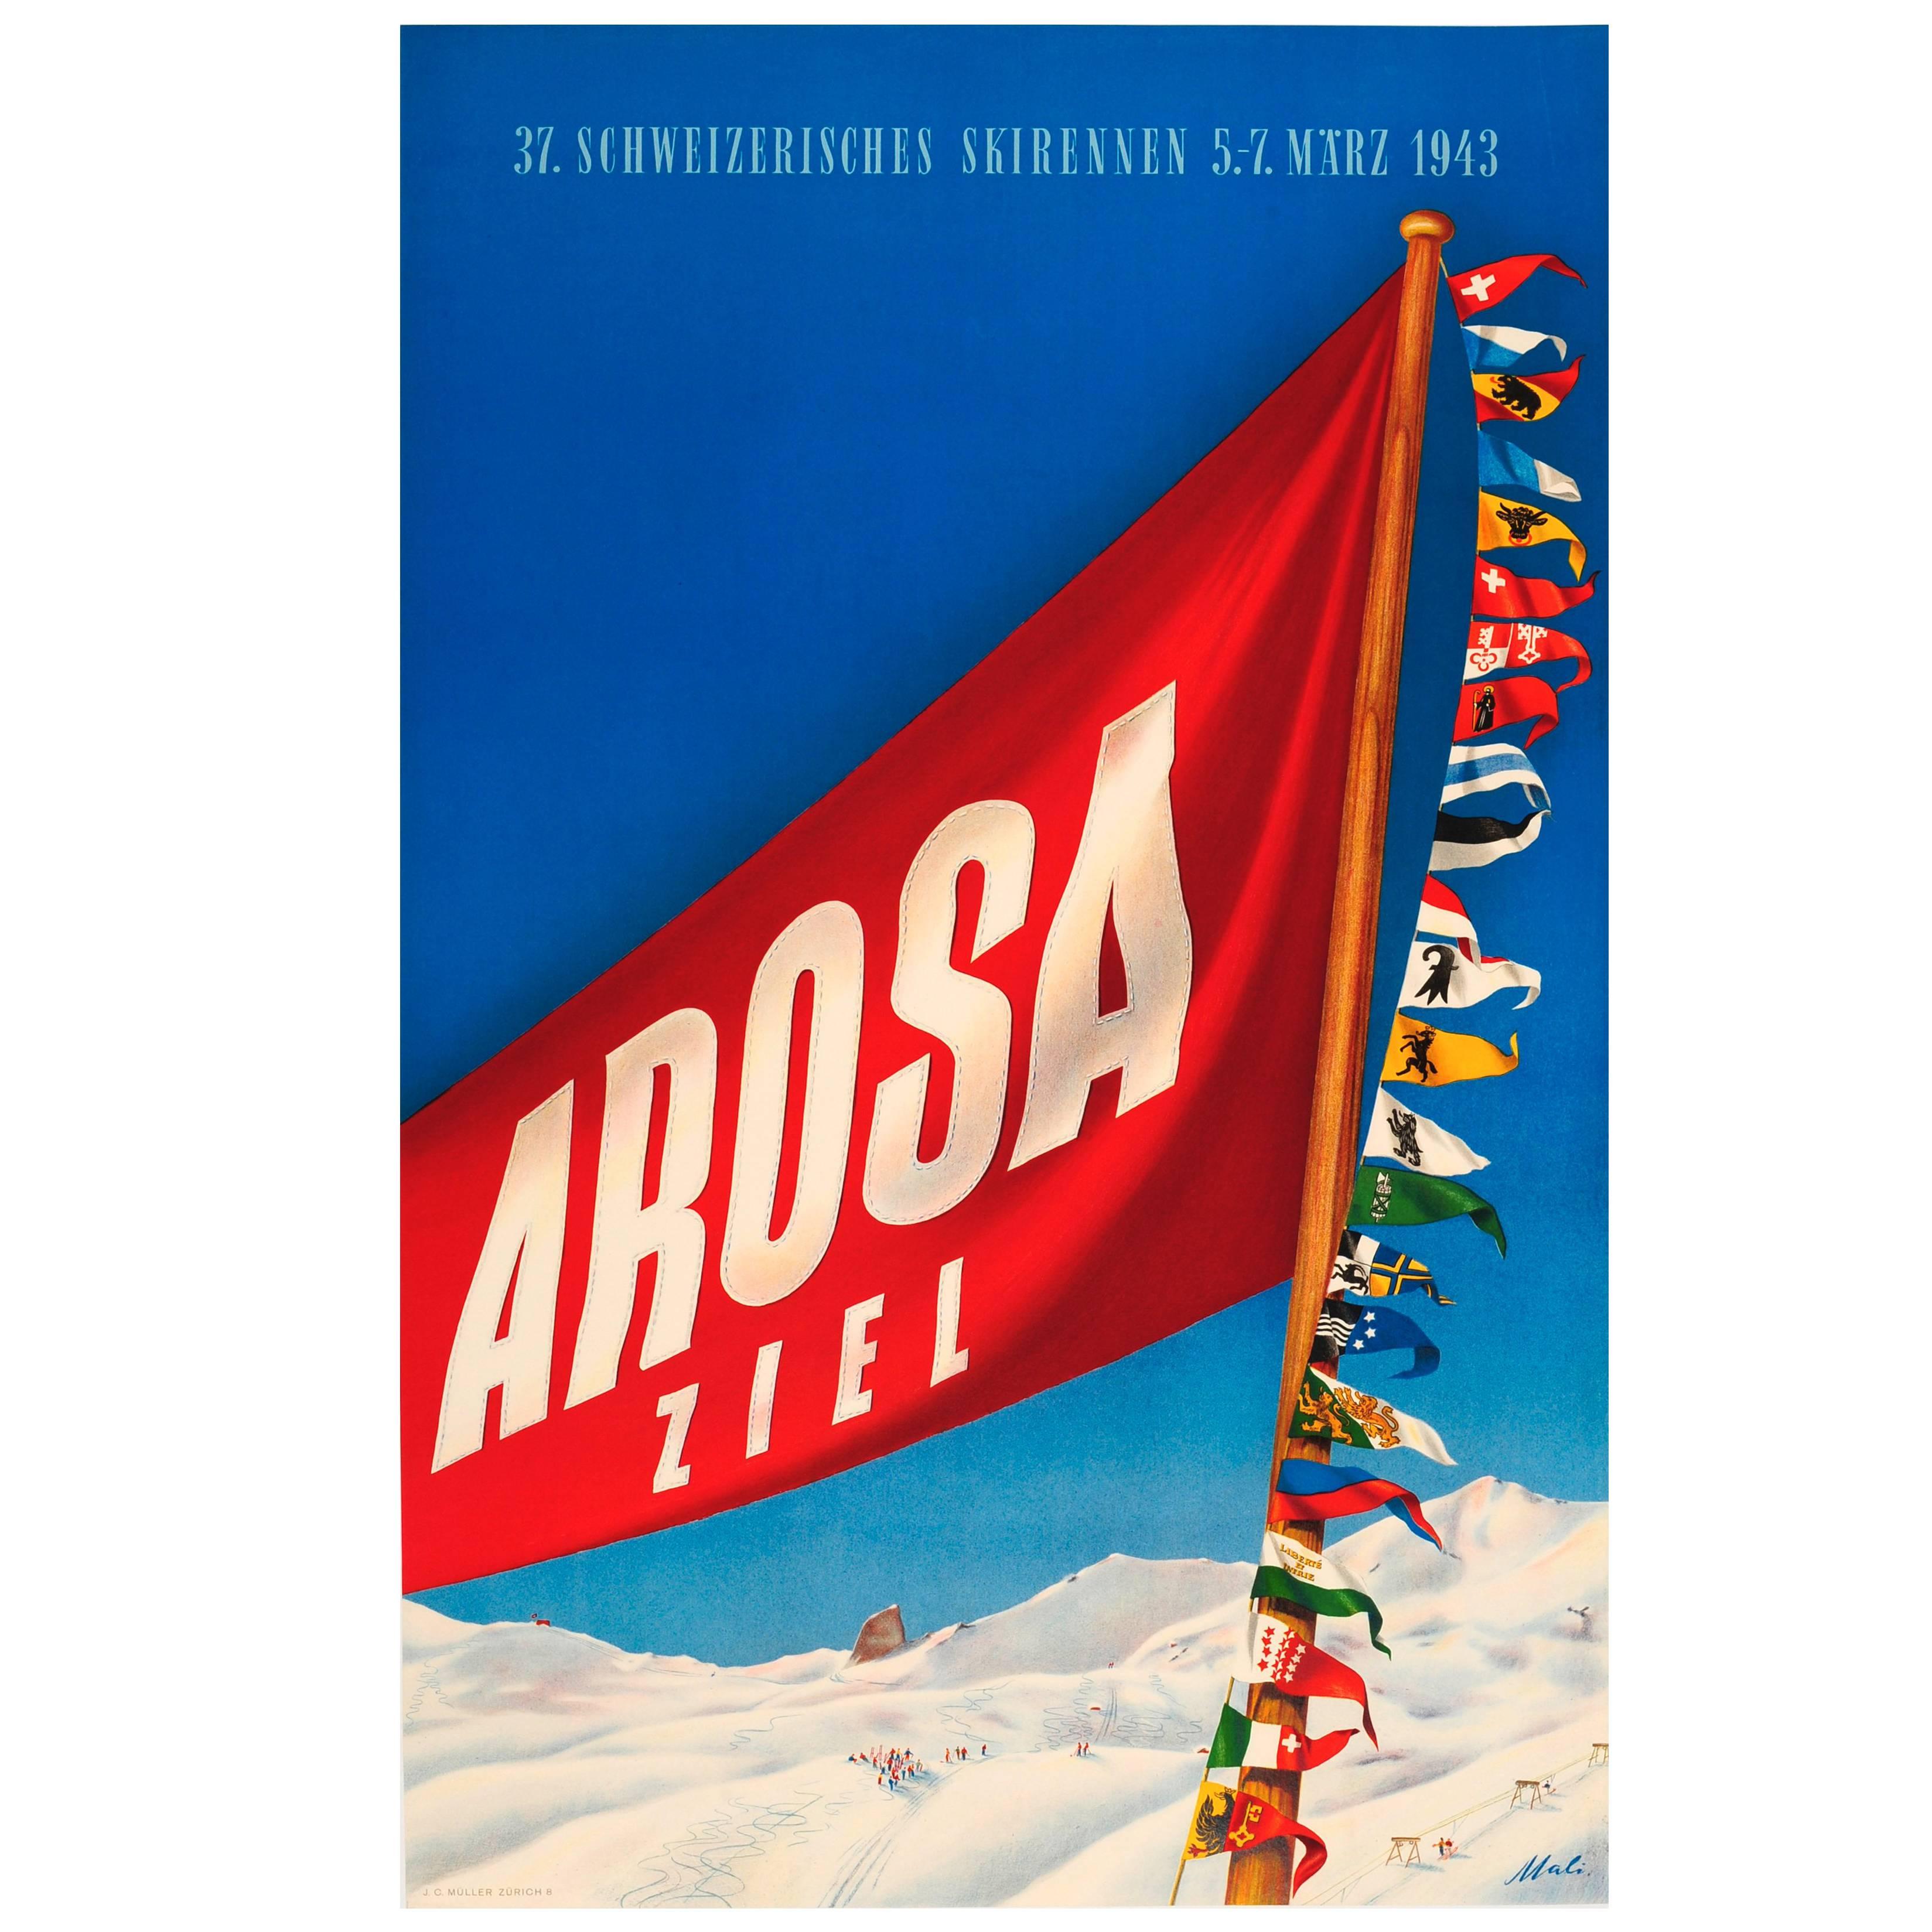 Original Vintage Skiing Event Poster for the 37 Schweizerisches Skirennen Arosa